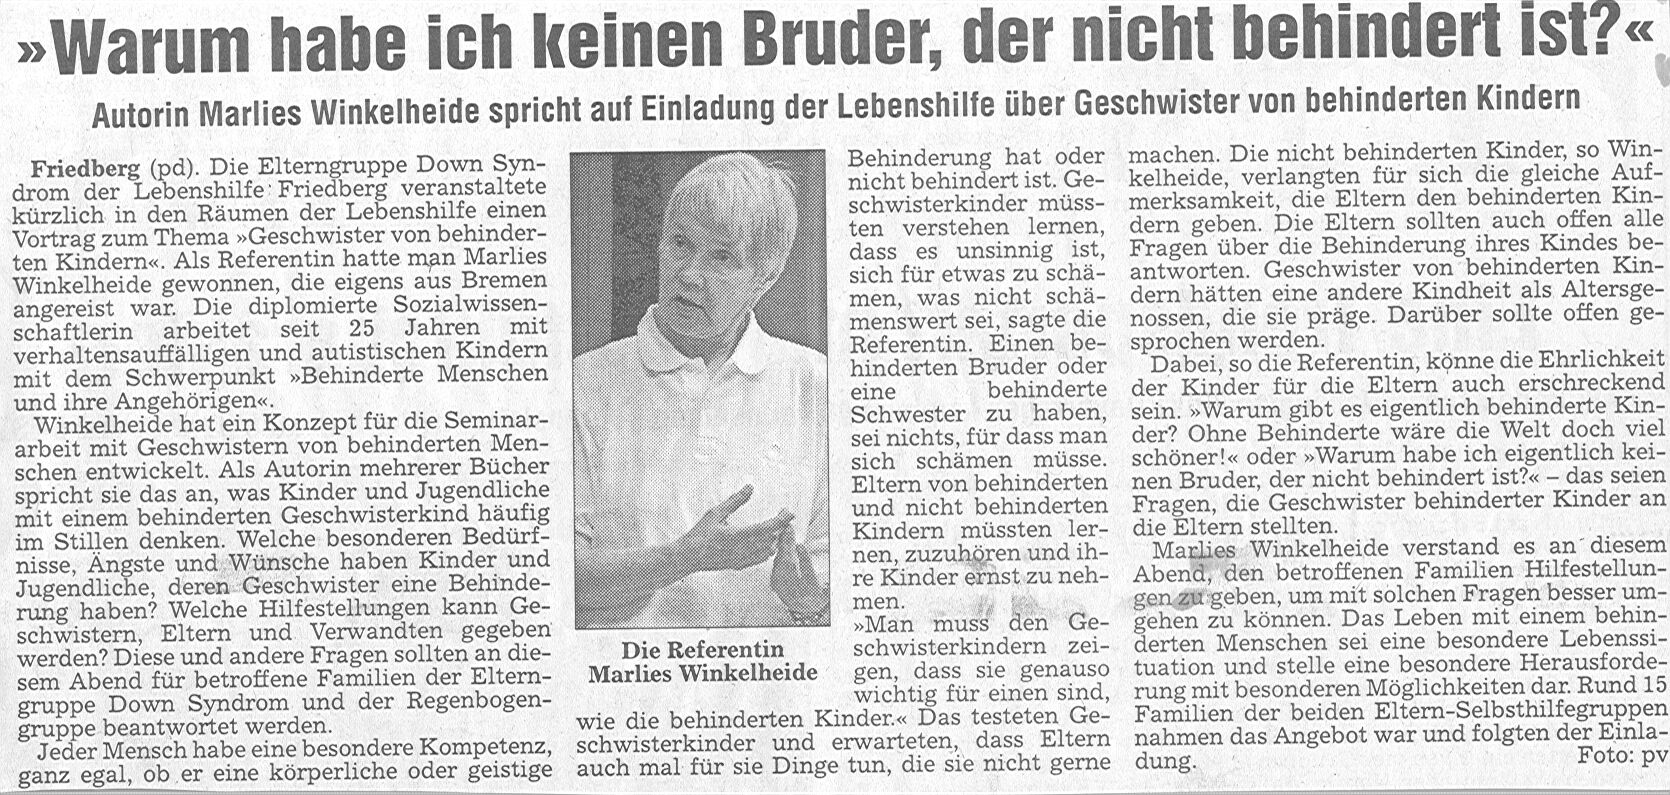 Originalausschnitt aus der Wetterauer Zeitung, Mai 2004